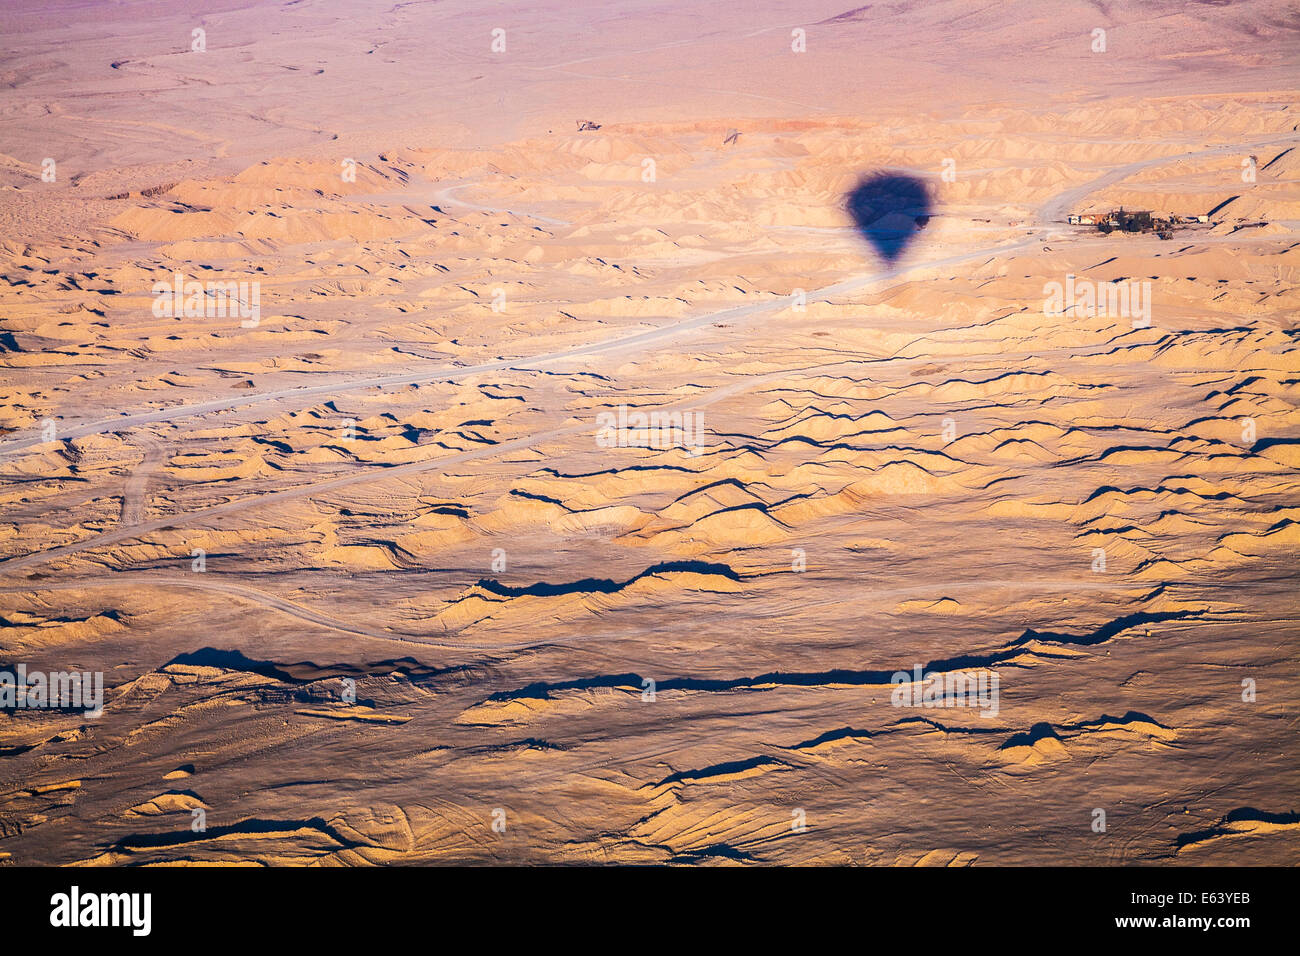 Der Schatten von einem Heißluftballon fliegen über der Wüste in Ägypten mit einem kleinen Weiler in der Ferne. Stockfoto